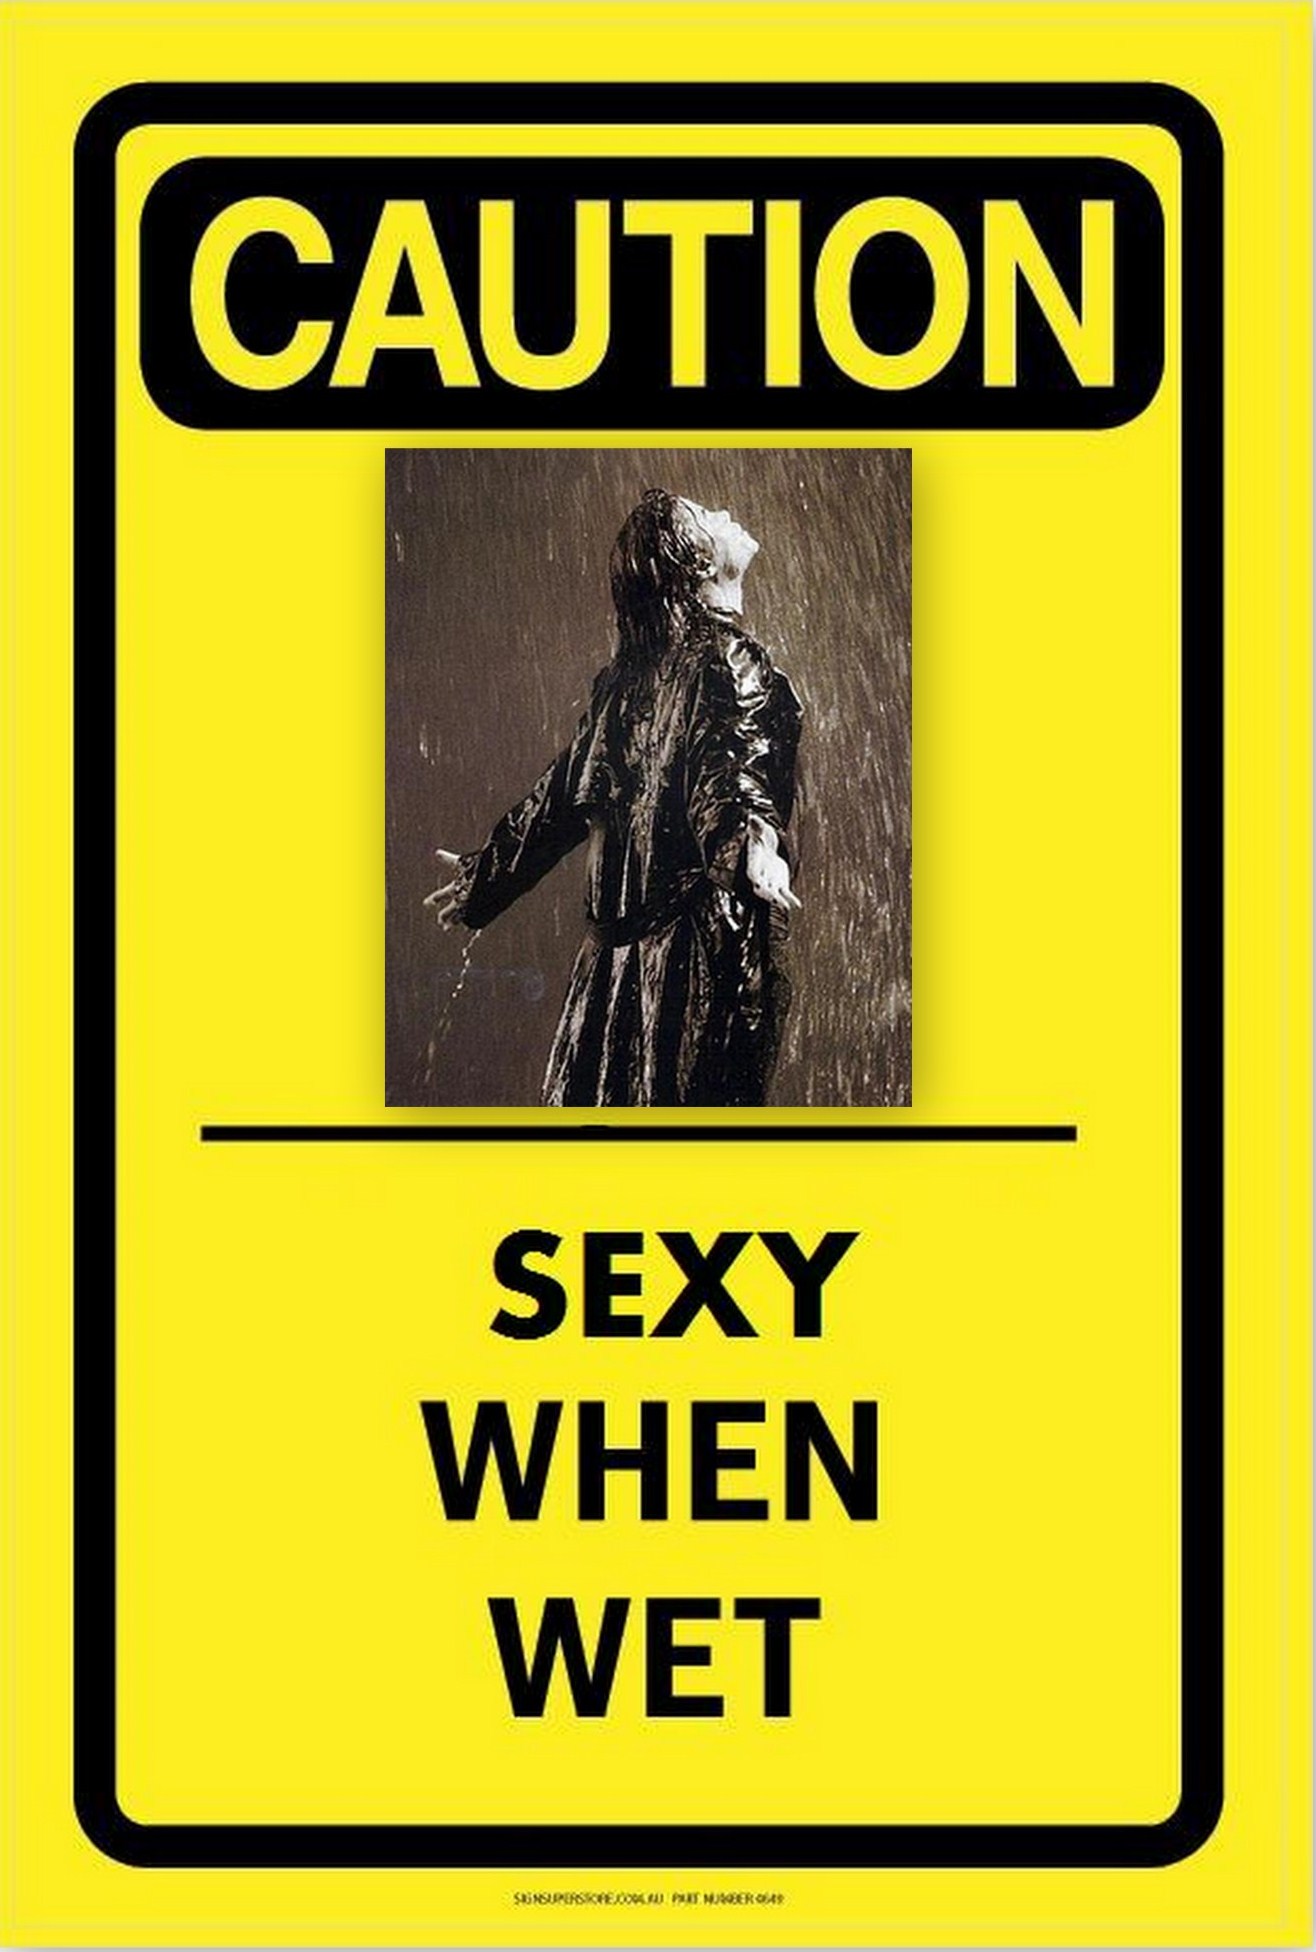 caution - Michael Jackson Photo (24443175) - Fanpop